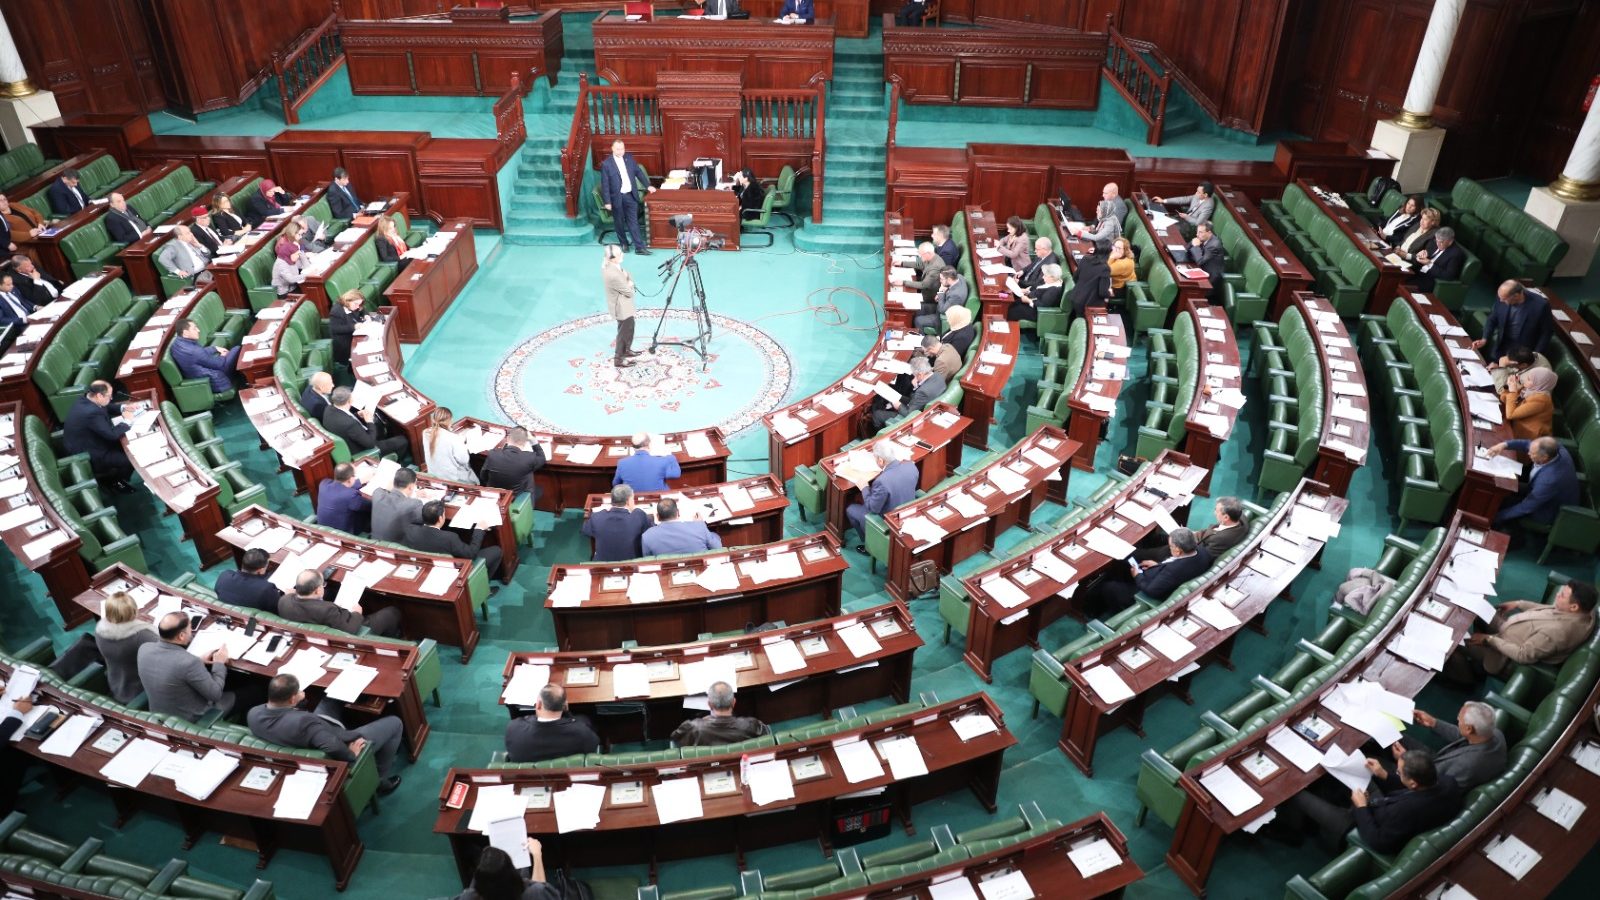 عريضة في البرلمان لمساءلة الحكومة (تصريح لـ”تونس الان”)